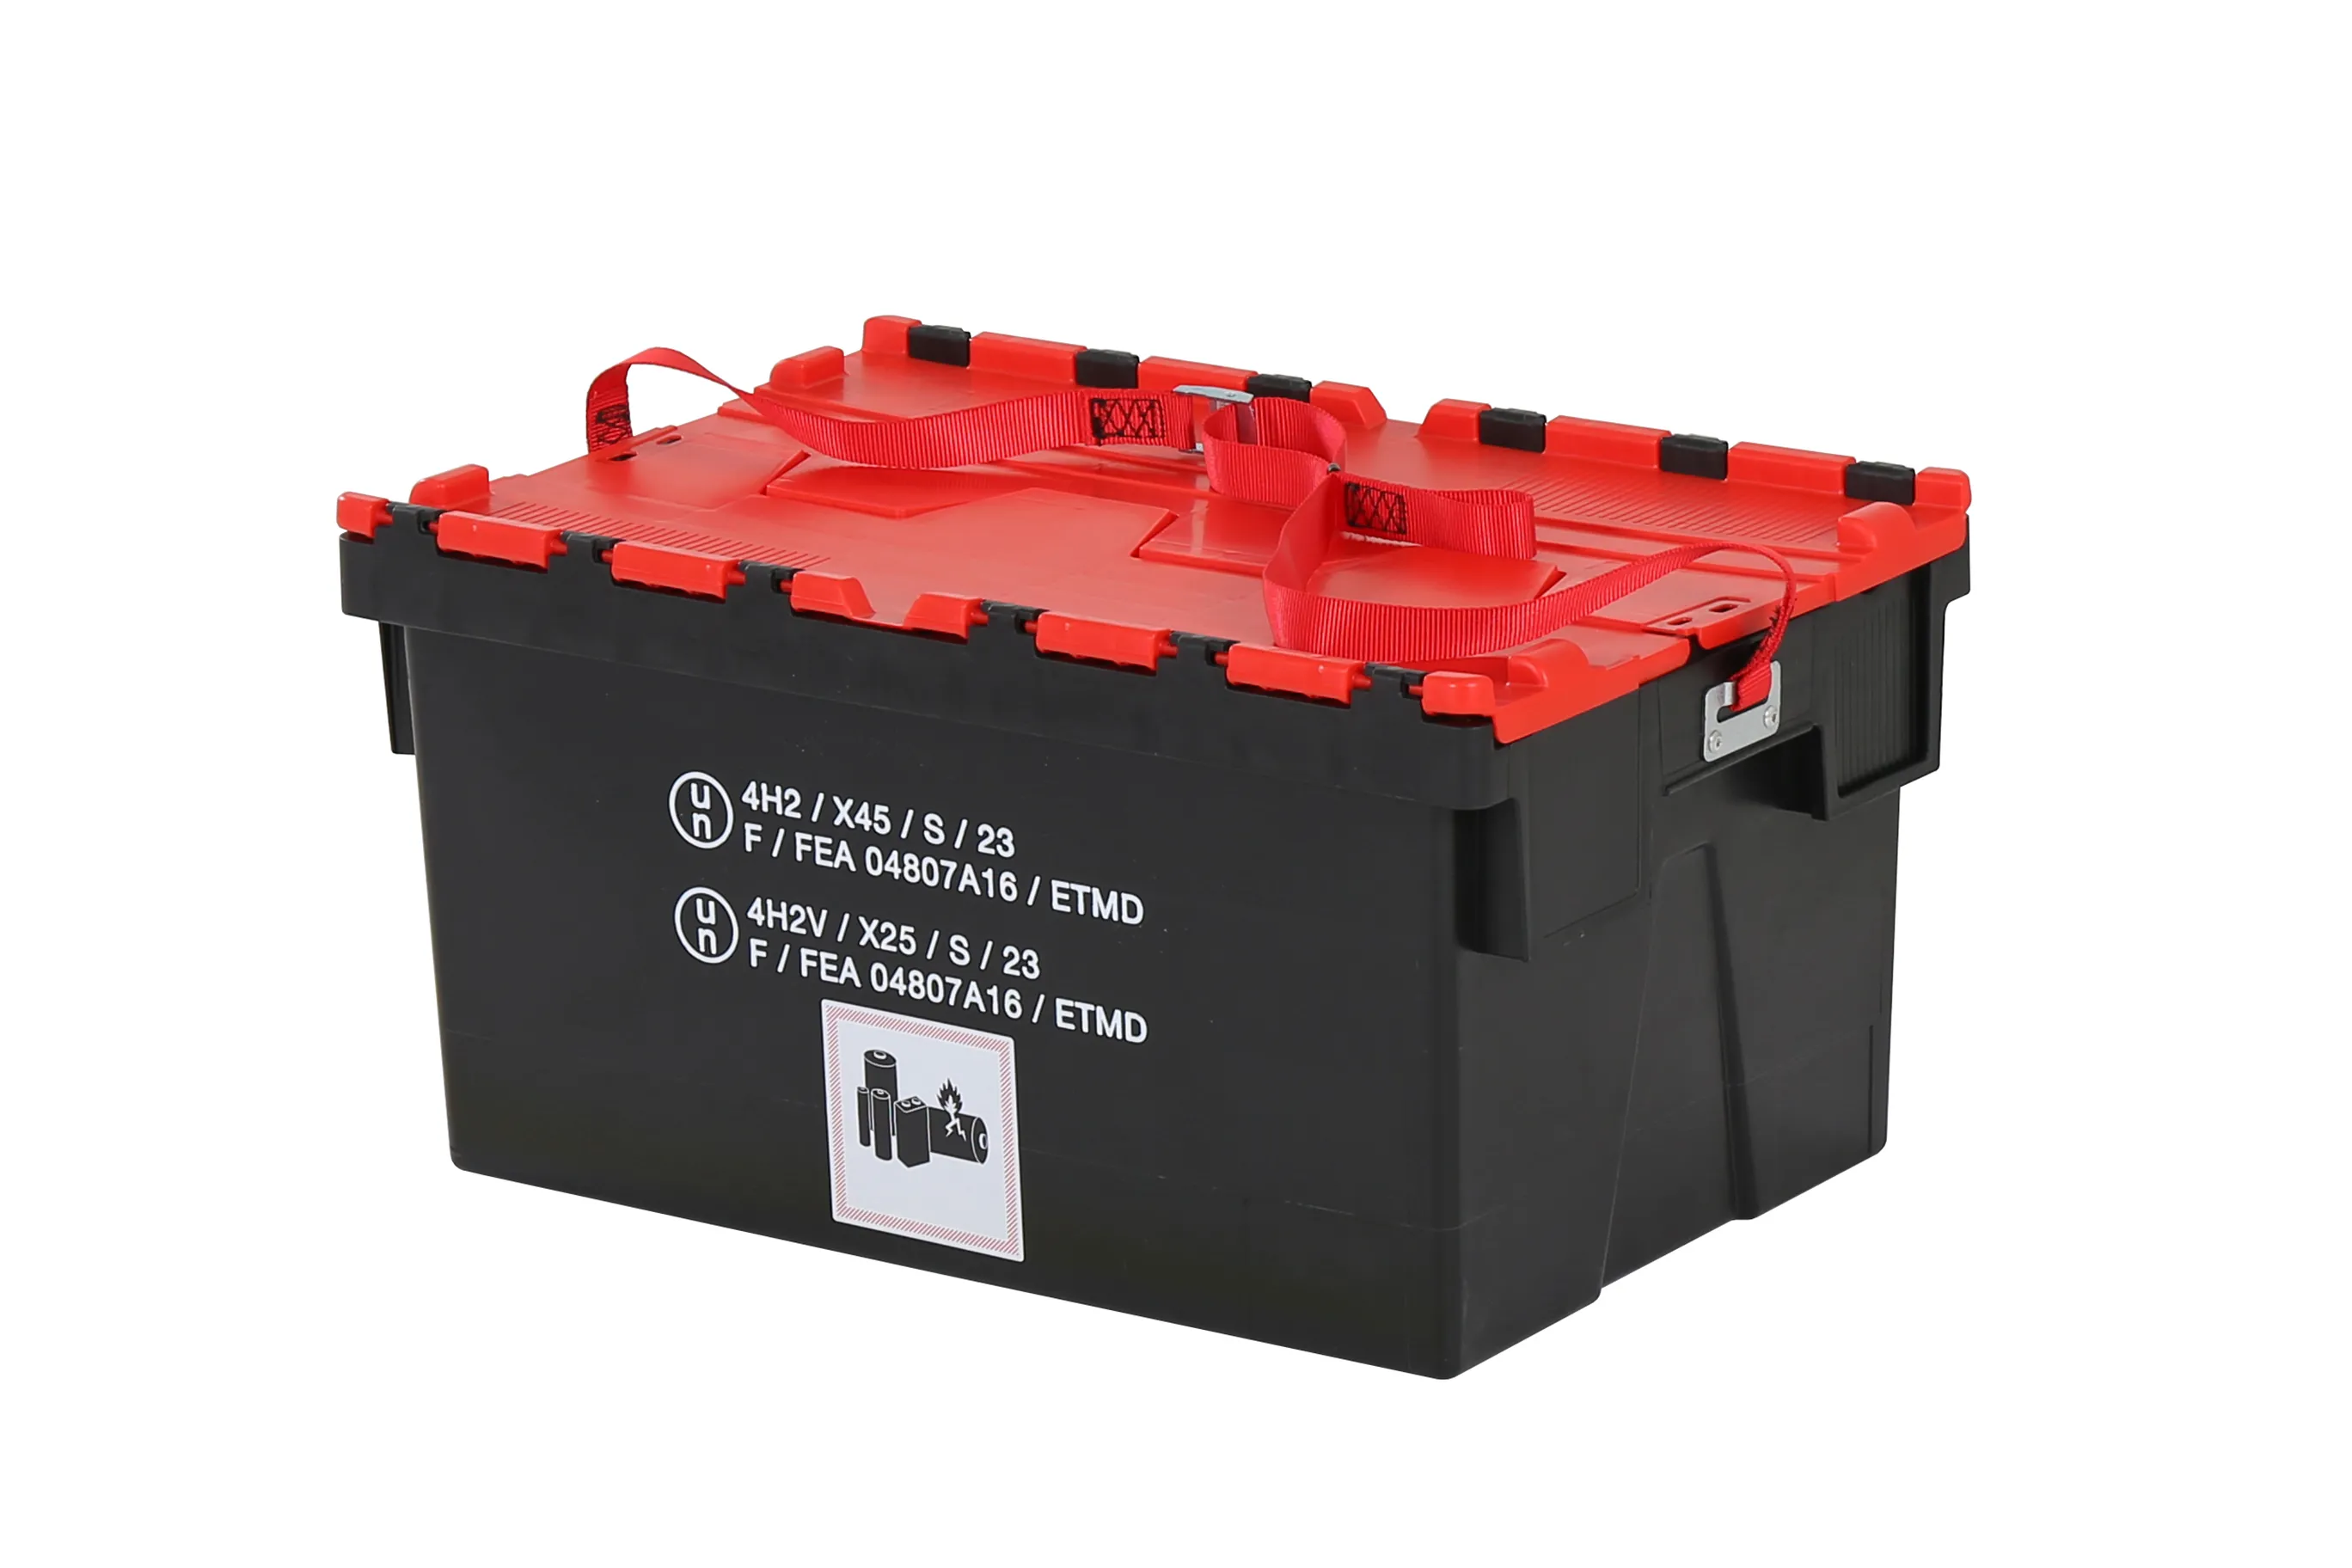 Batterijbox van kunststof - 600 x 400 x H310 mm - zwart-rood